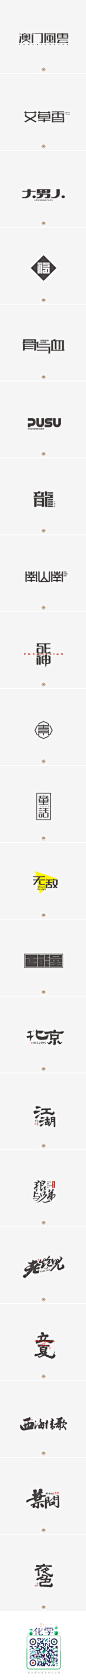 FONT DESIGN BIG SHOW — 第13期_字体传奇网-中国首个字体品牌设计师交流网 #字体#